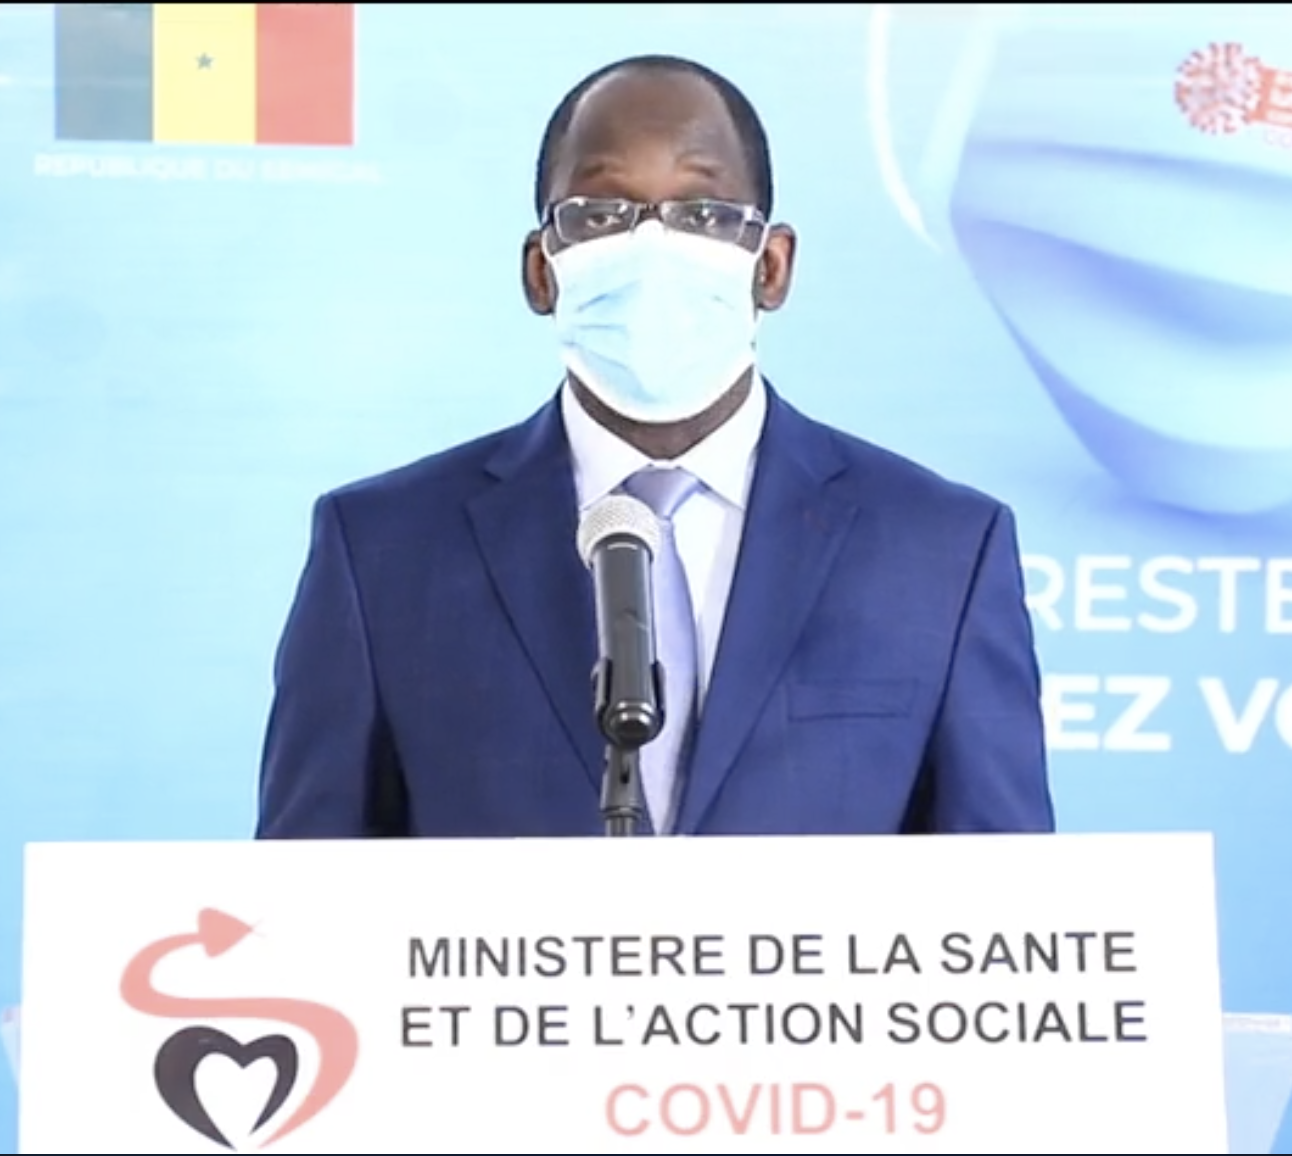 SÉNÉGAL : La déclaration du ministre de la Santé et de l’Action Sociale après 2 mois de lutte contre le COVID-19.